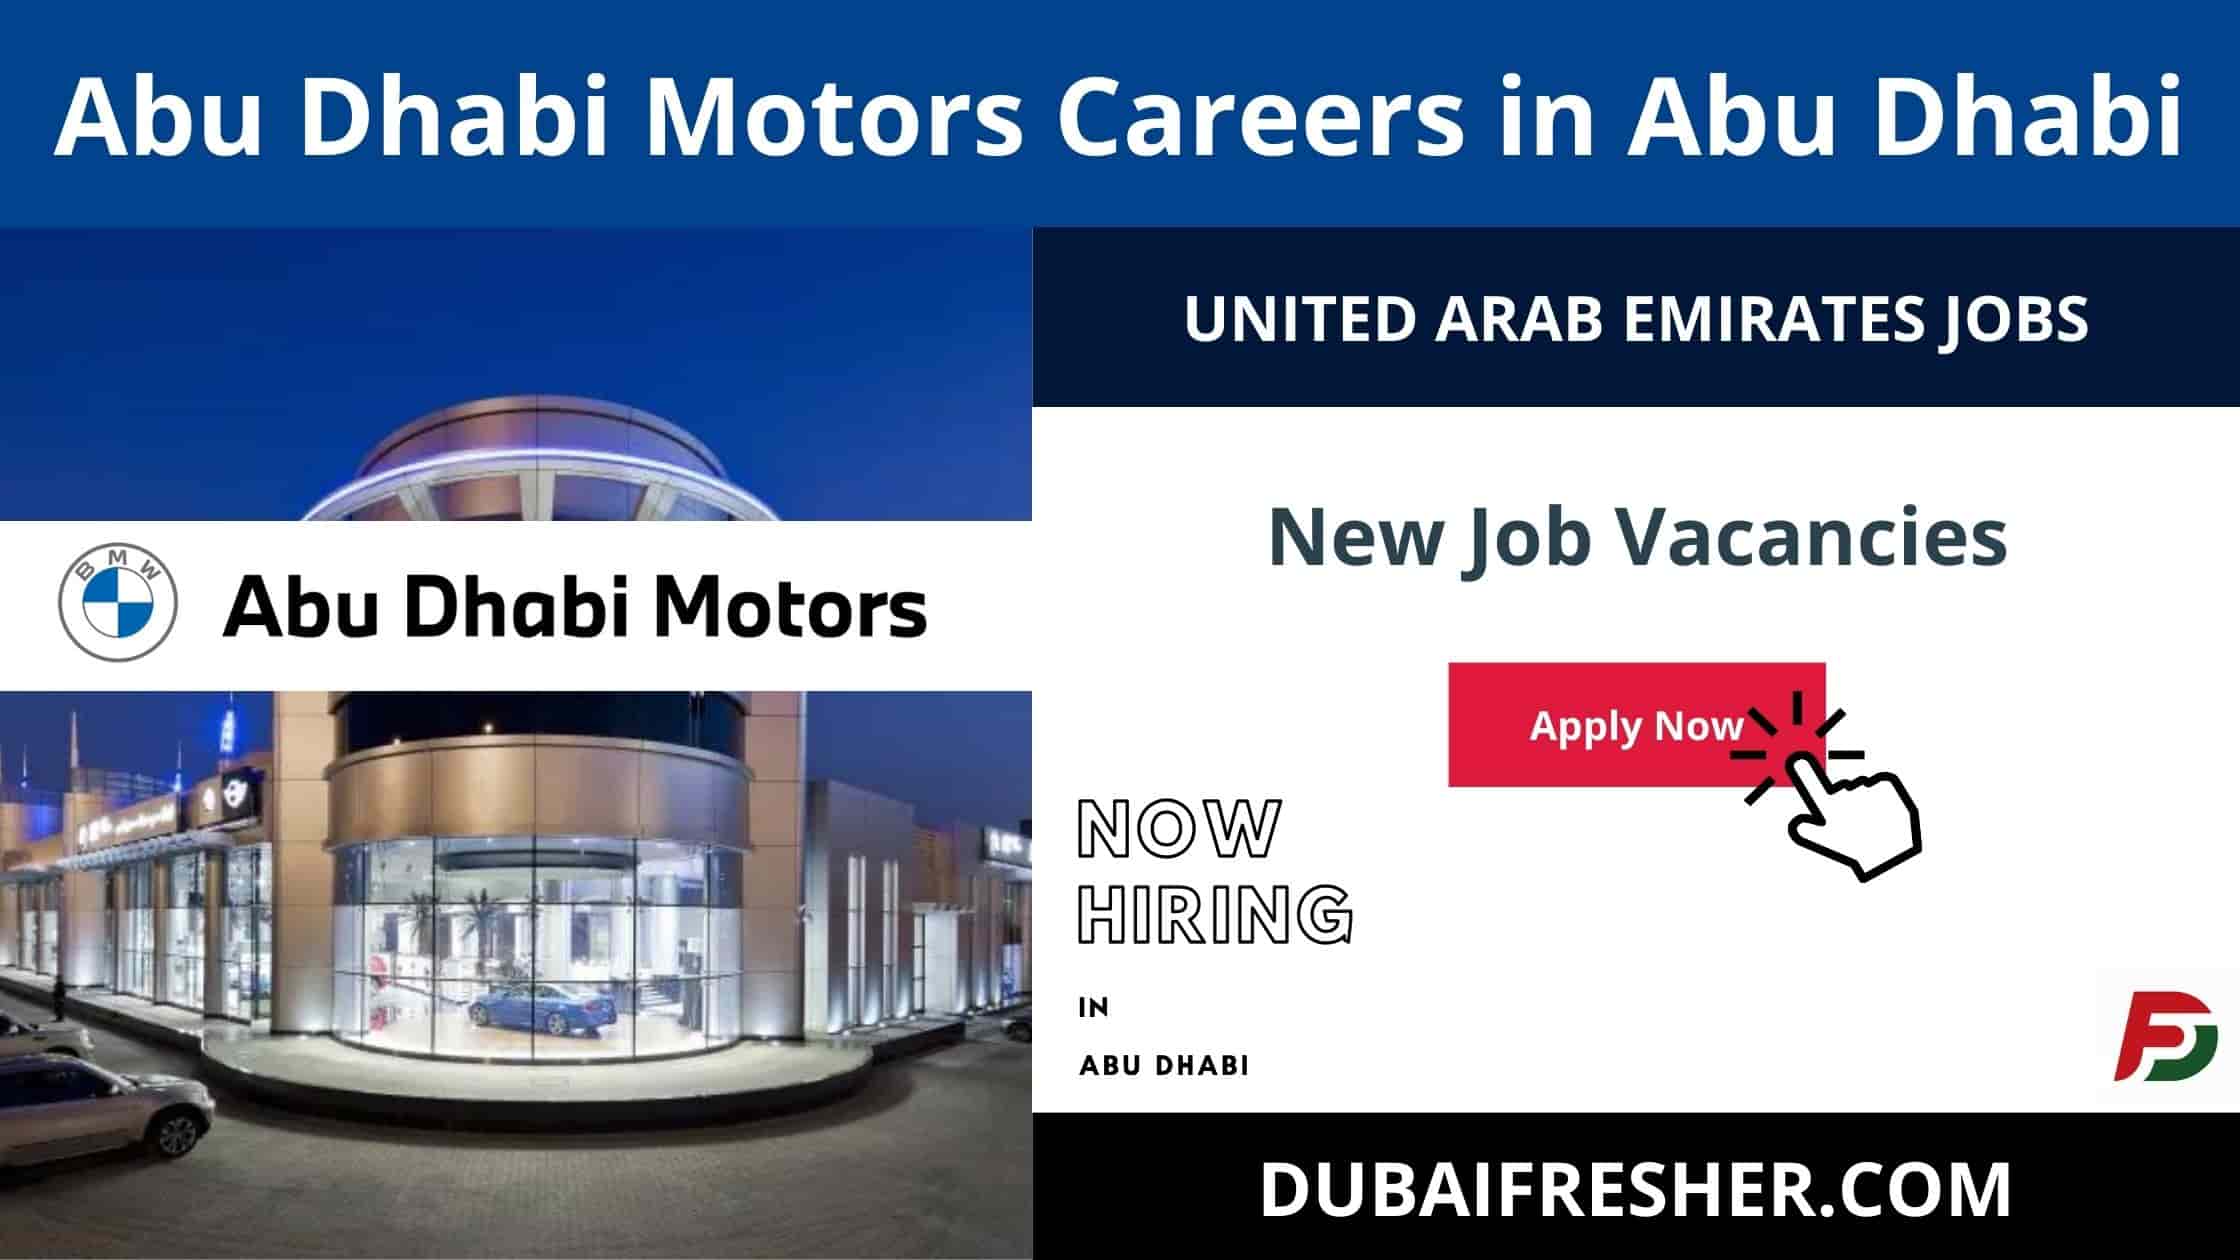 Abu Dhabi Motors Careers in Abu Dhabi